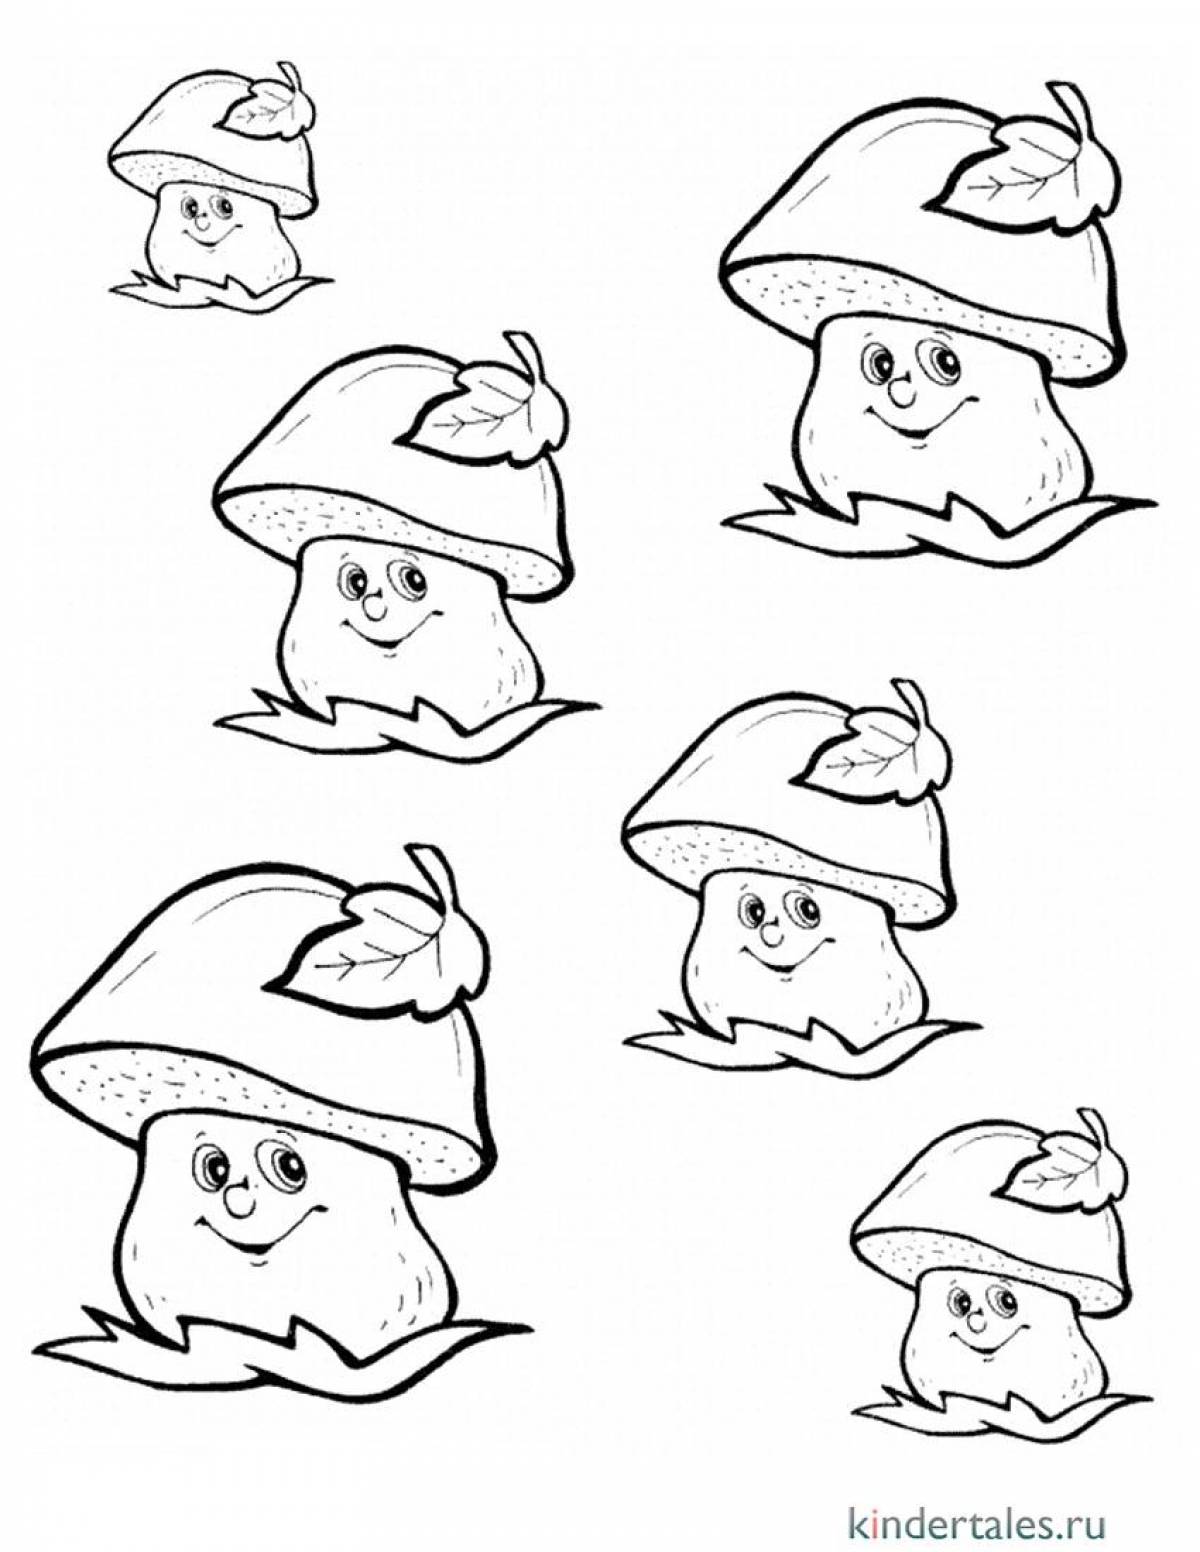 Coloring shining mushroom